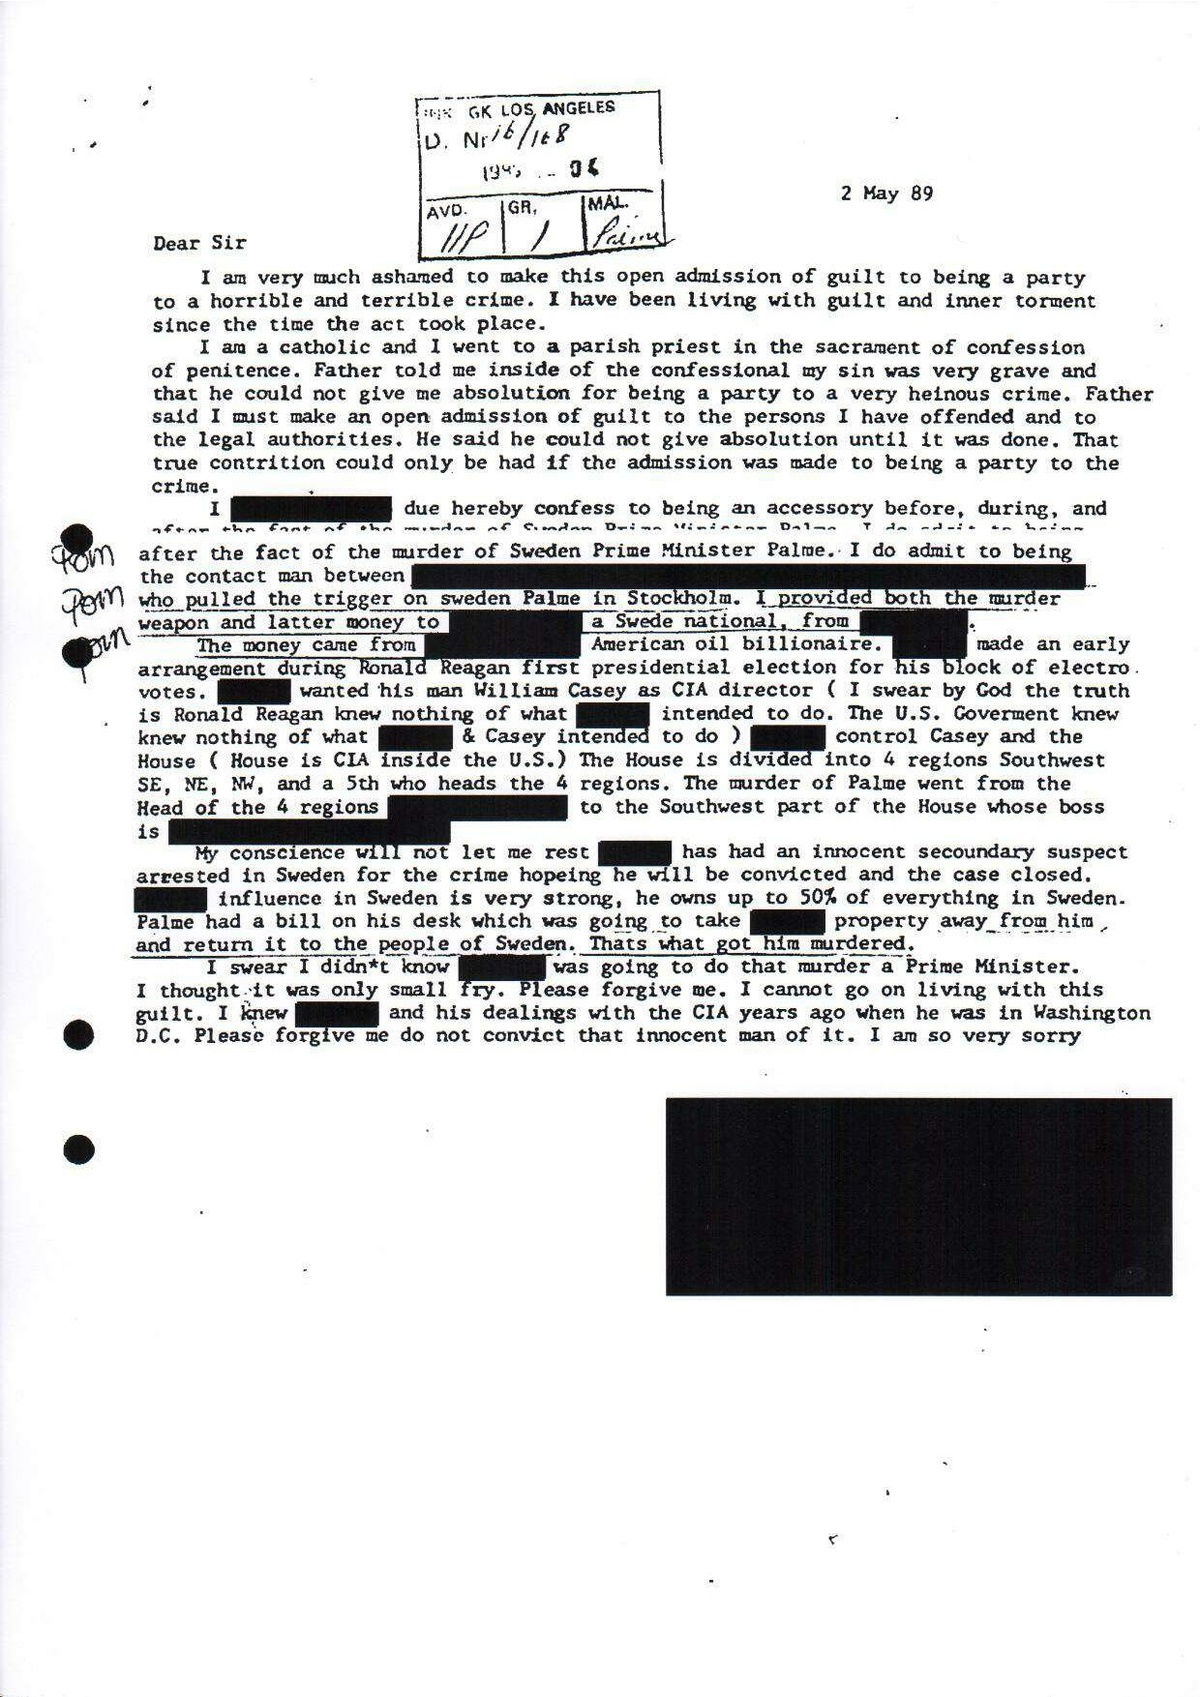 Pol-1989-05-30 D11580-00 Erkännanden Palmemordet.pdf